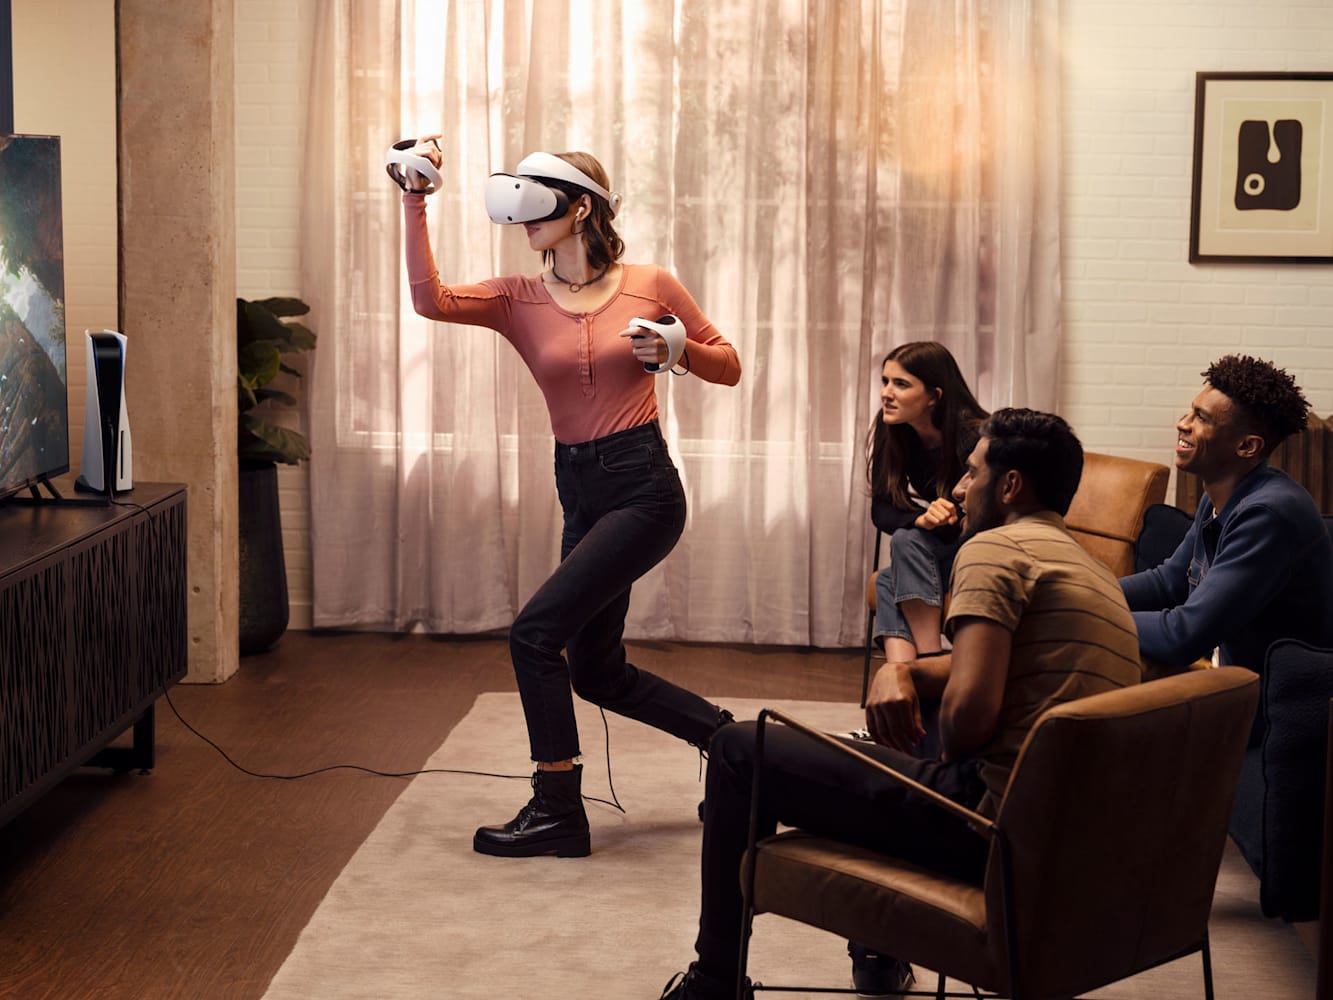 Las gafas VR de Sony podrían presentarse durante la GDC